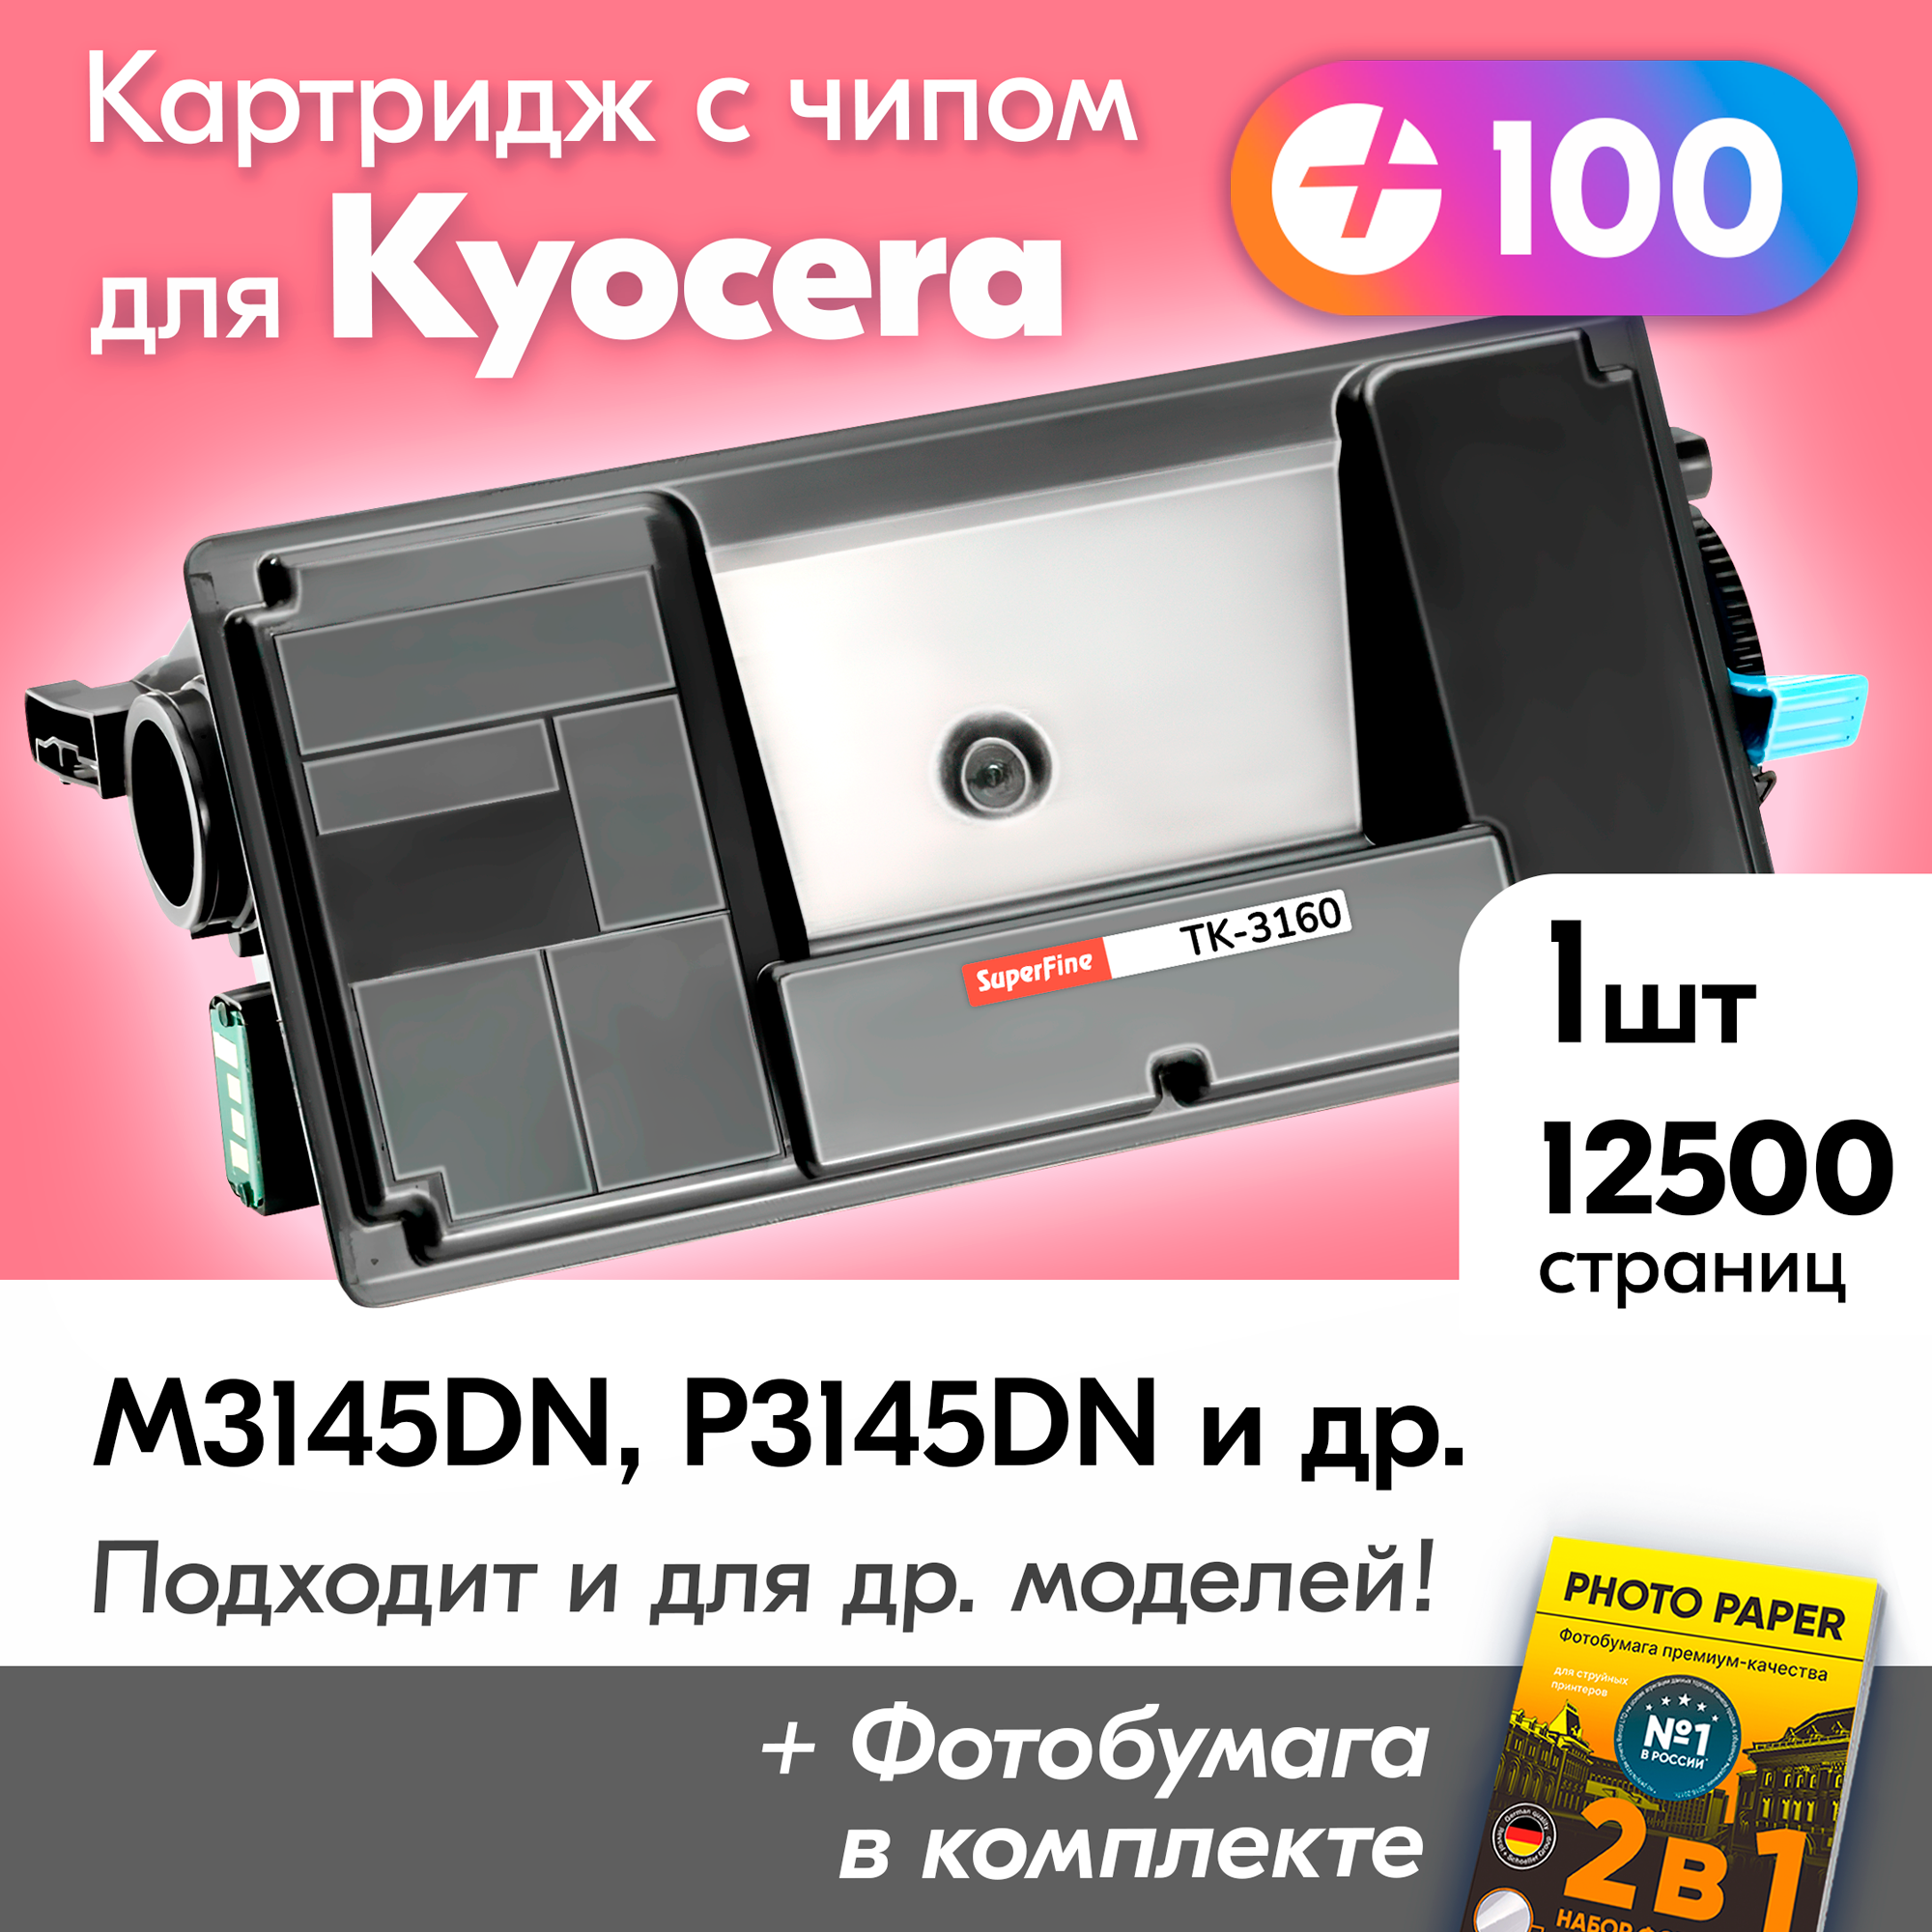 Лазерный картридж к KYOCERA TK-3160 M3145DN, P3145DN, P3055DN, M3645DN, P3045DN и др. с краской (тонером) черный новый заправляемый, с чипом